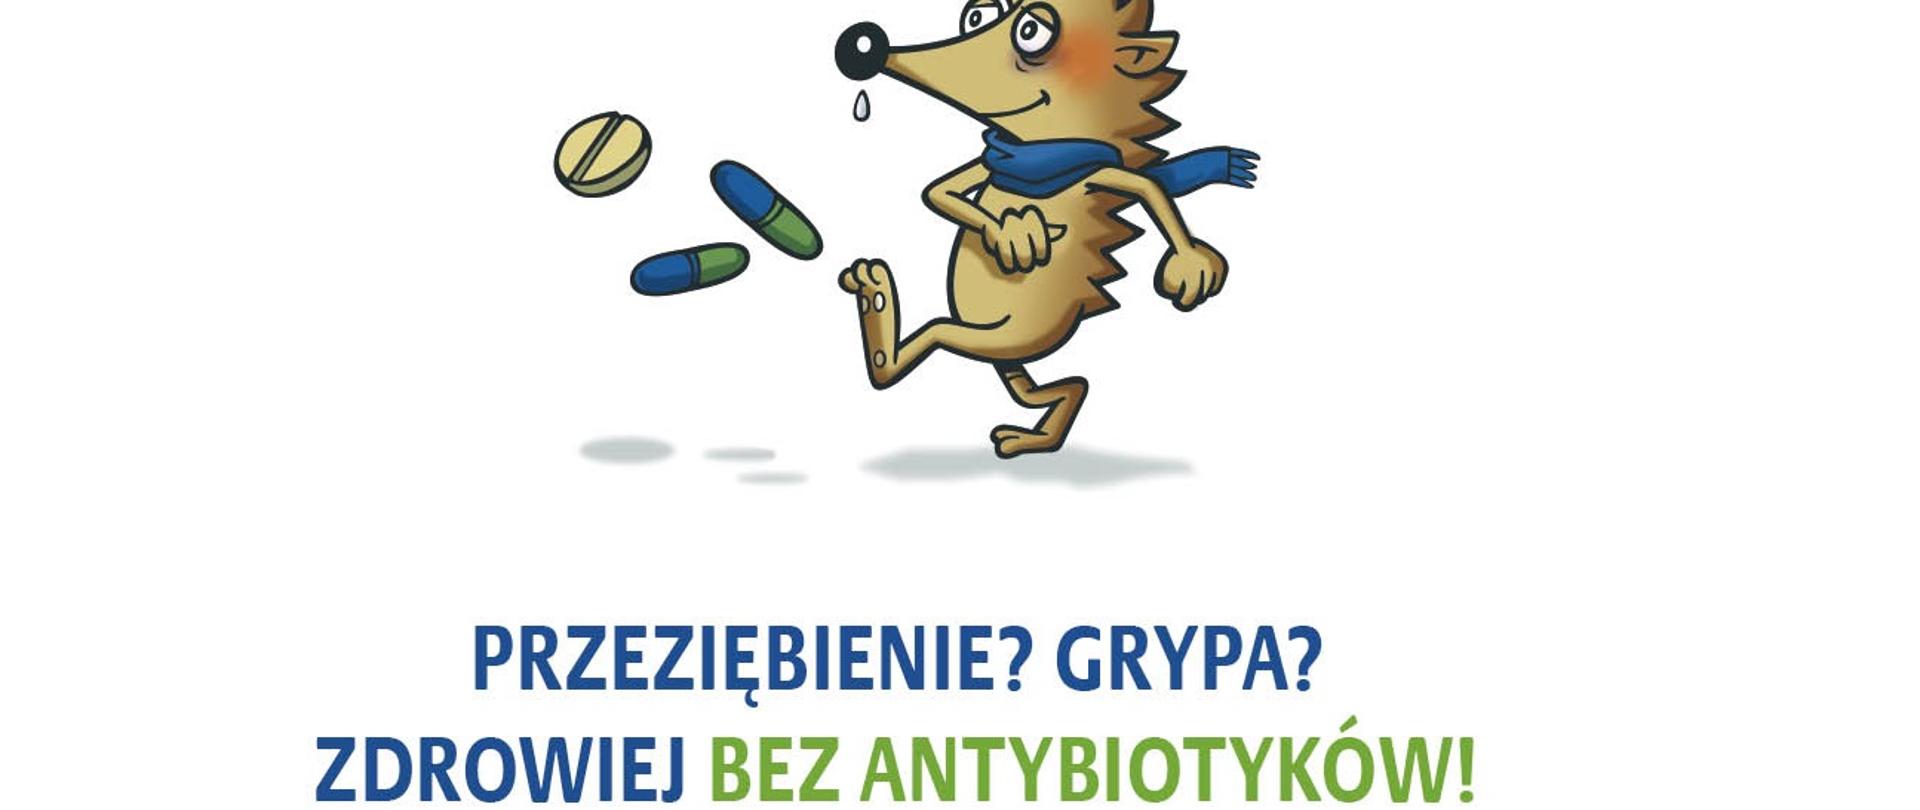 grafika kampanii Europejskiego Dania Wiedzy o Antybiotykach, który przypada 18 listopada. Jeżyk w szaliku, z katarem cieknącym mu z nosa, kopiący antybiotyki, a pod rysunkiem napis "Przeziębienie? Grypa? Zdrowiej bez antybiotyków!" 